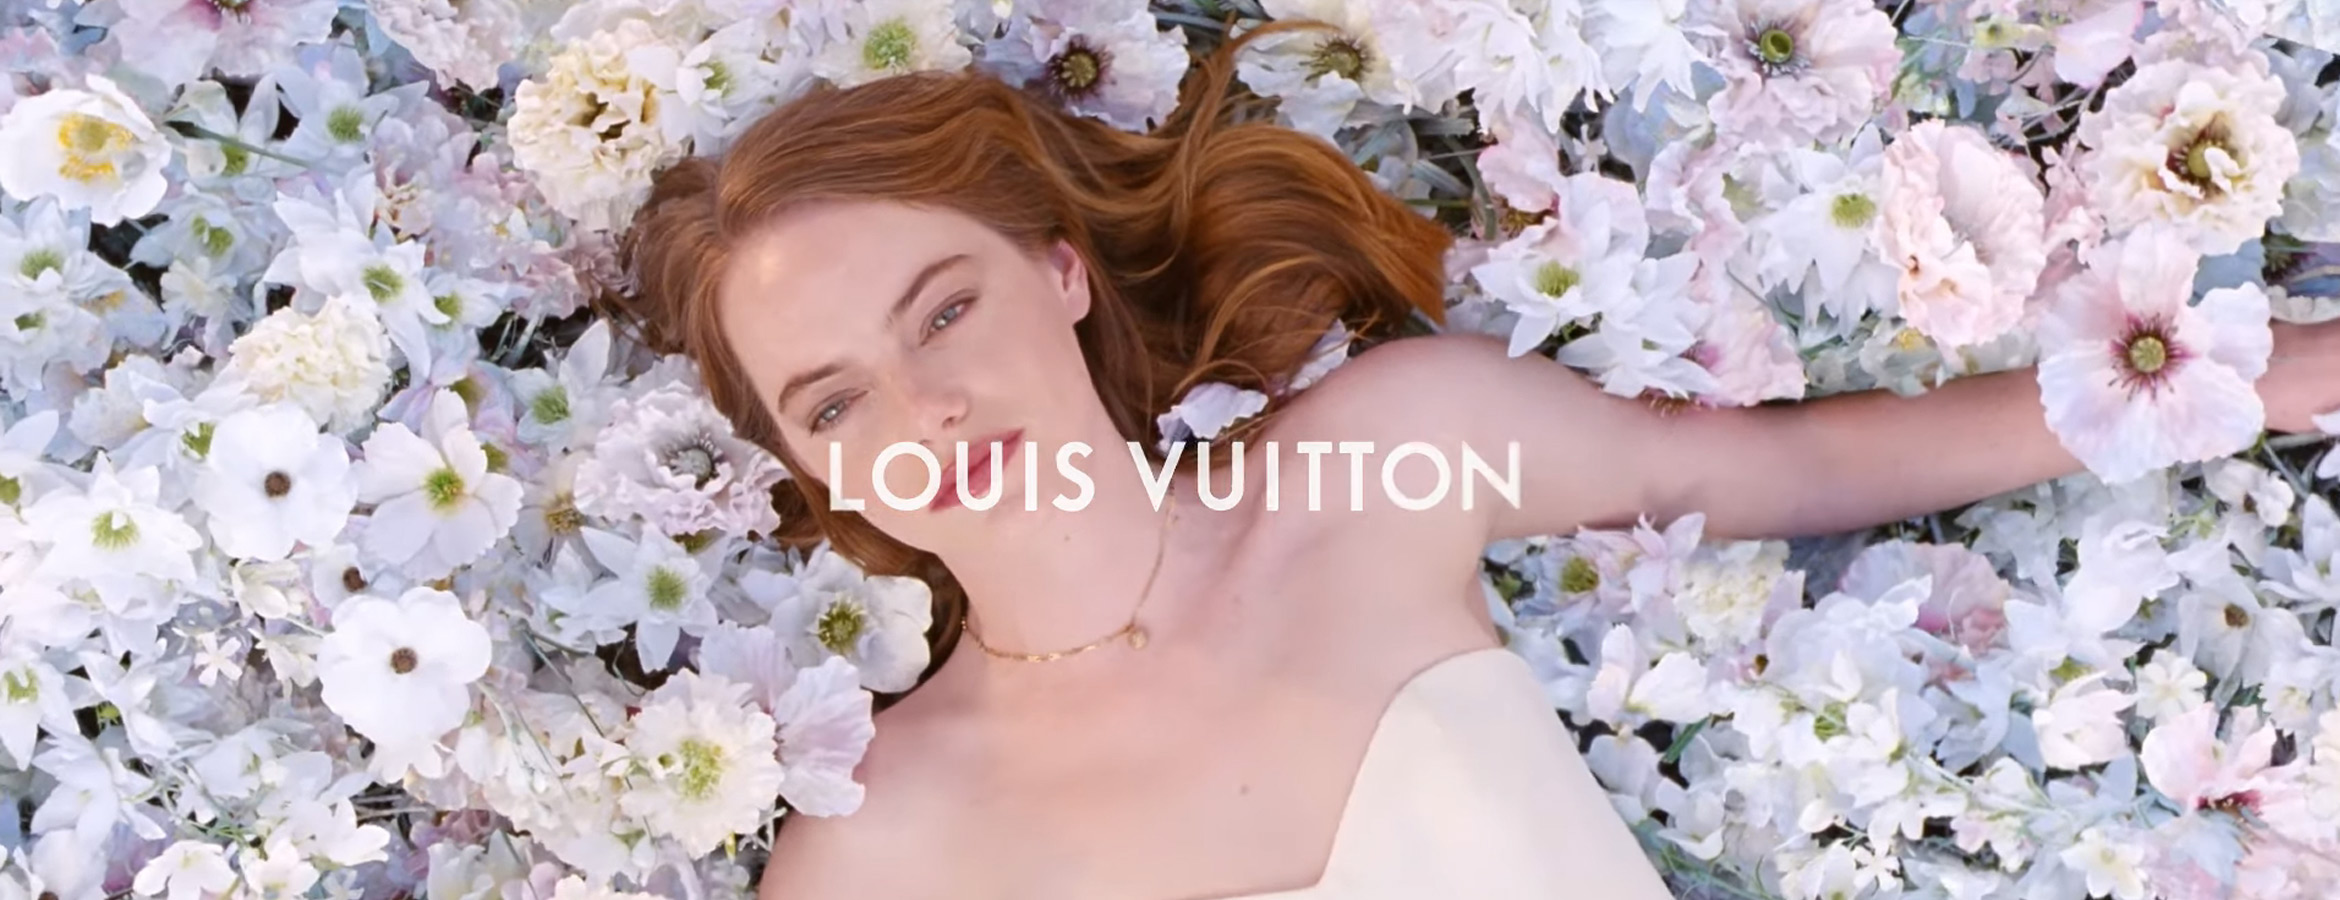 Musique de la pub Louis Vuitton 2020 avec Emma Stone – La Réclame